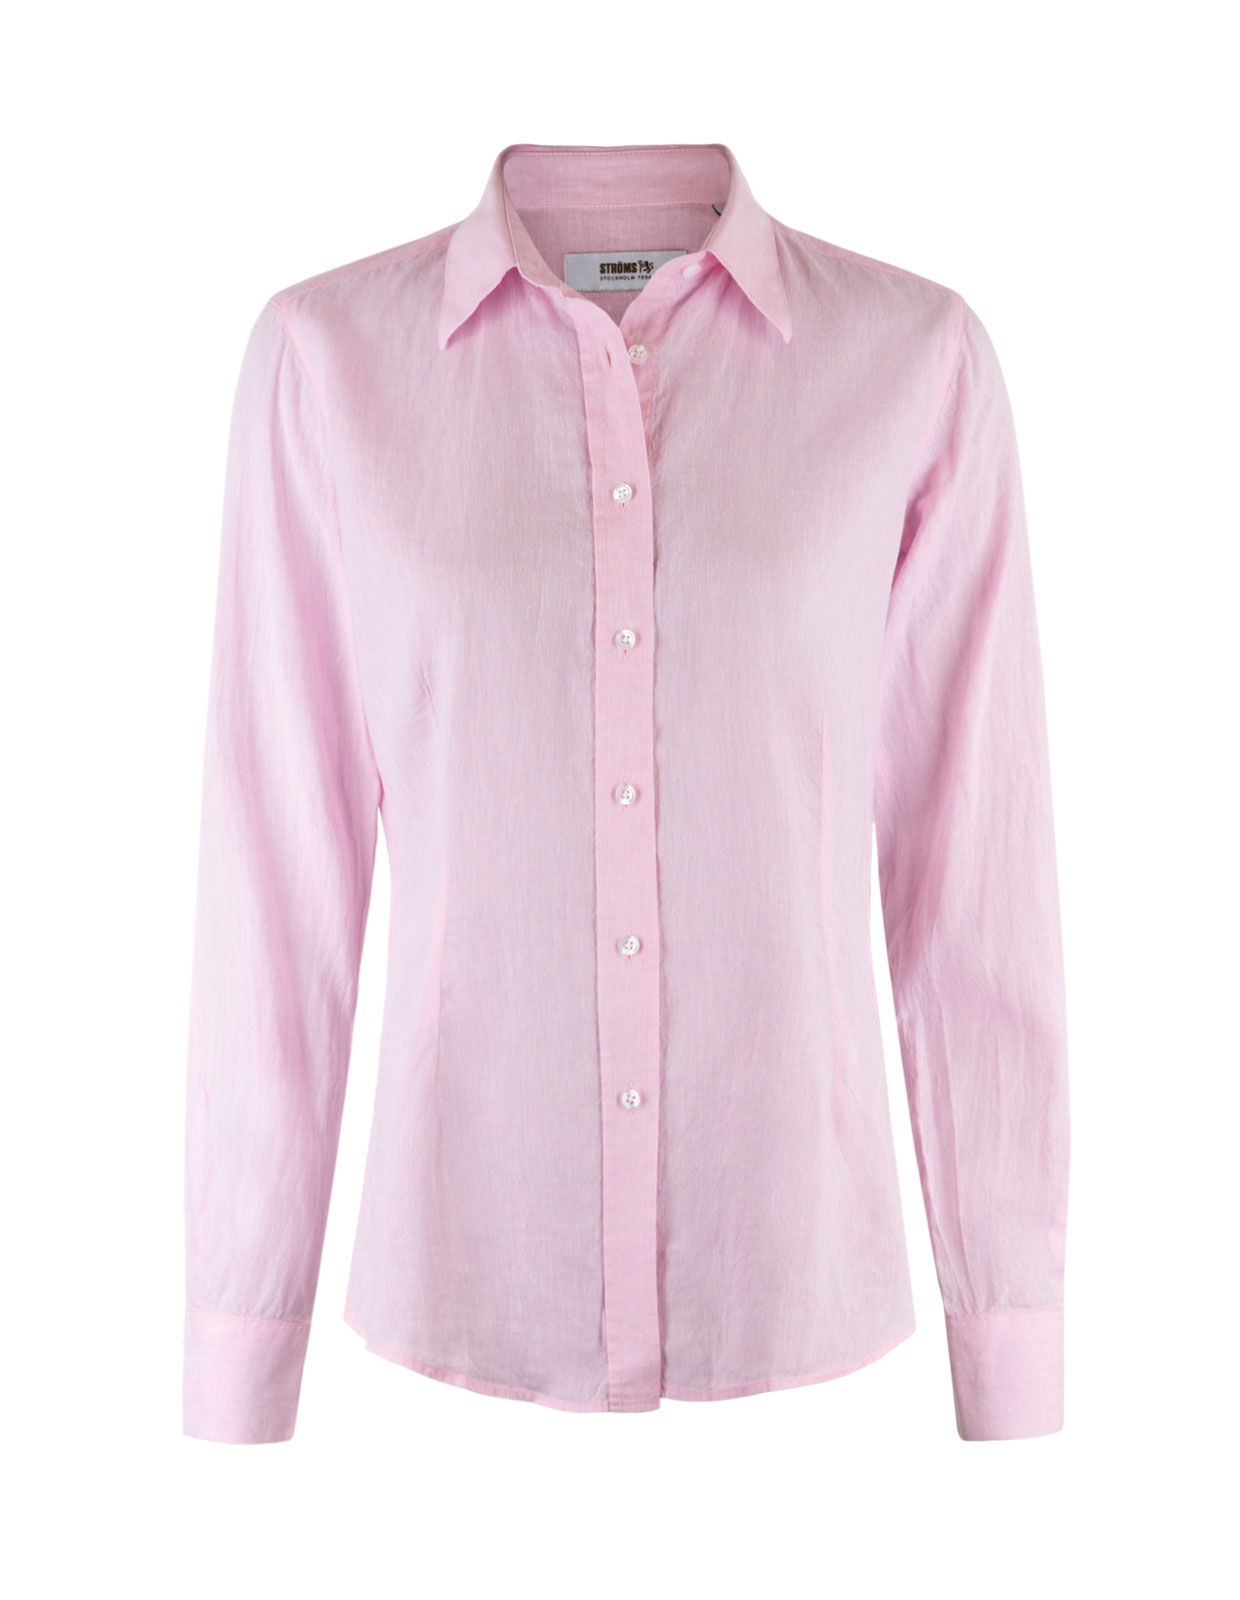 Linnen Shirt Long Sleeves Lt Pink